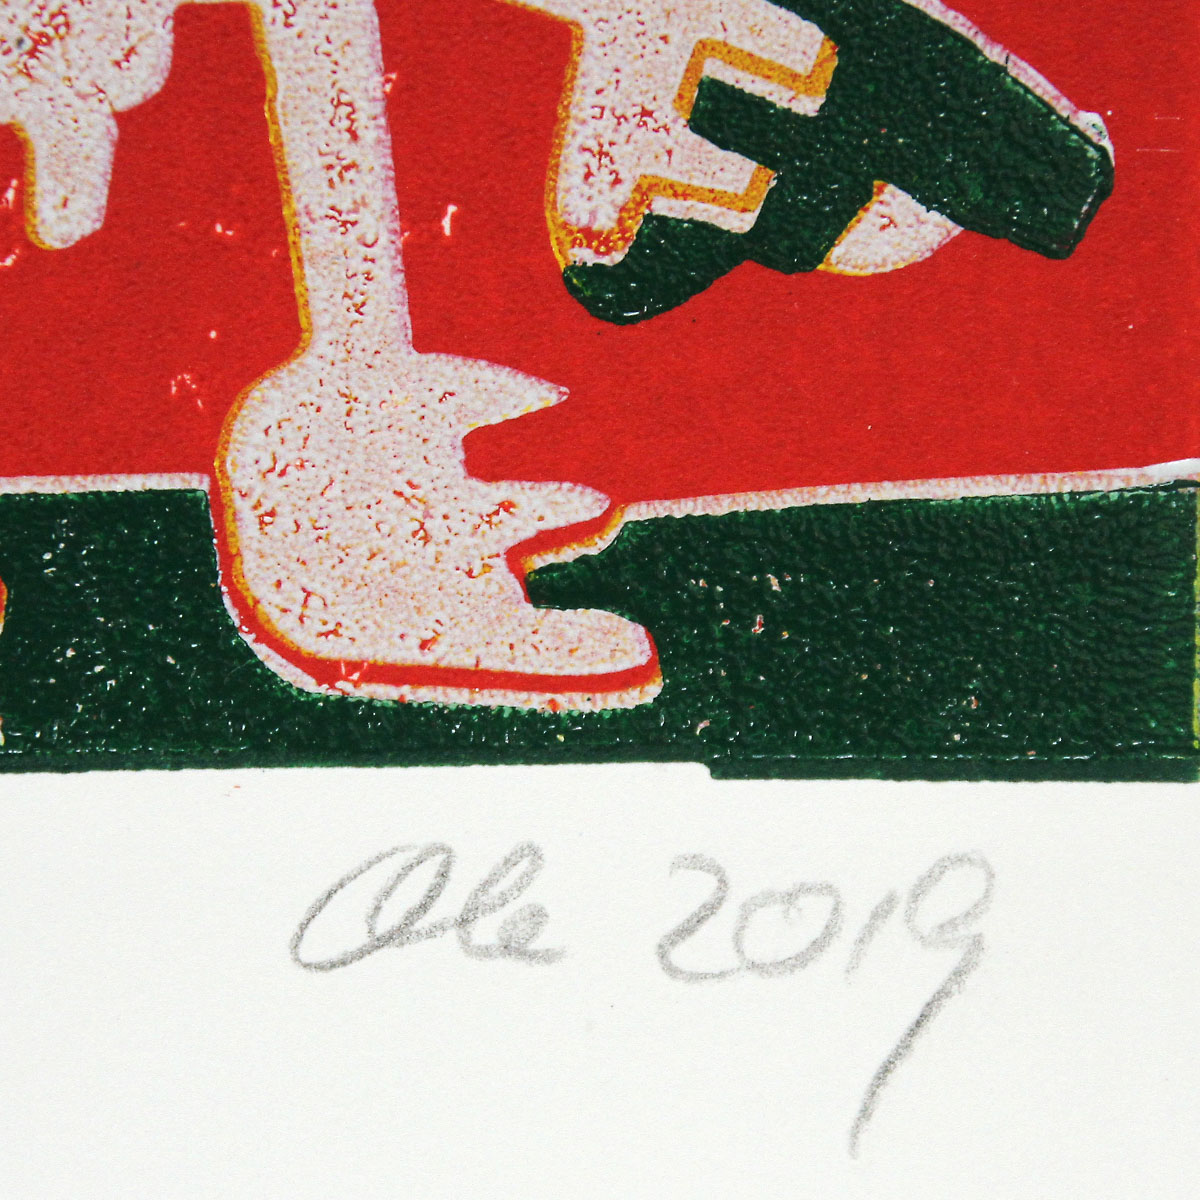 Grafik (serielles Unikat), mehrfarbiger Linoldruck von Frank-Ole Haake: "Der Seiltänzer"